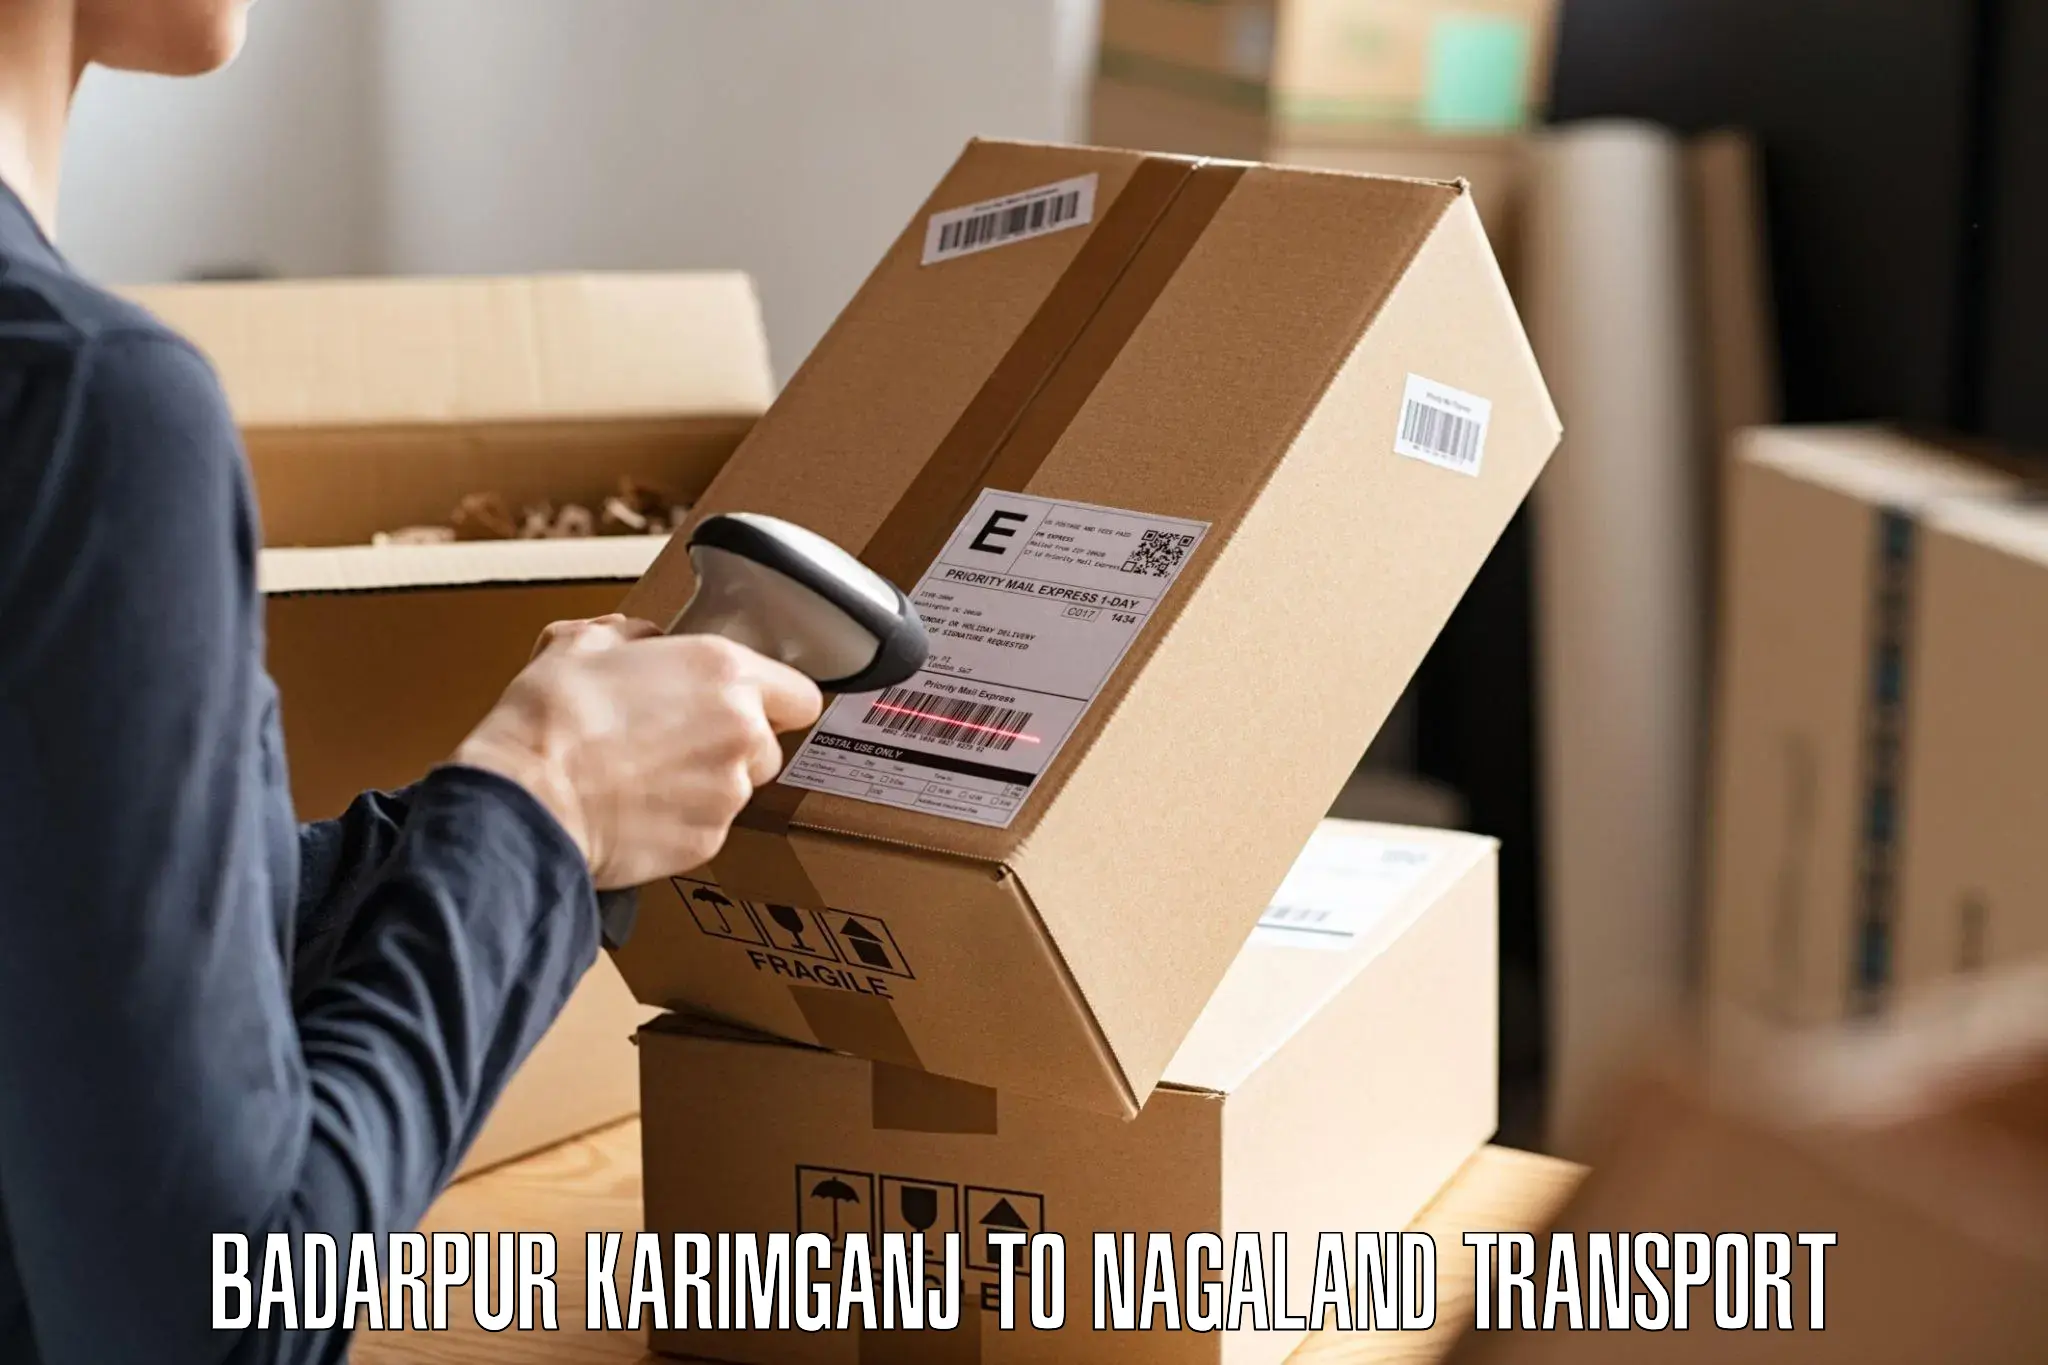 Pick up transport service in Badarpur Karimganj to Dimapur